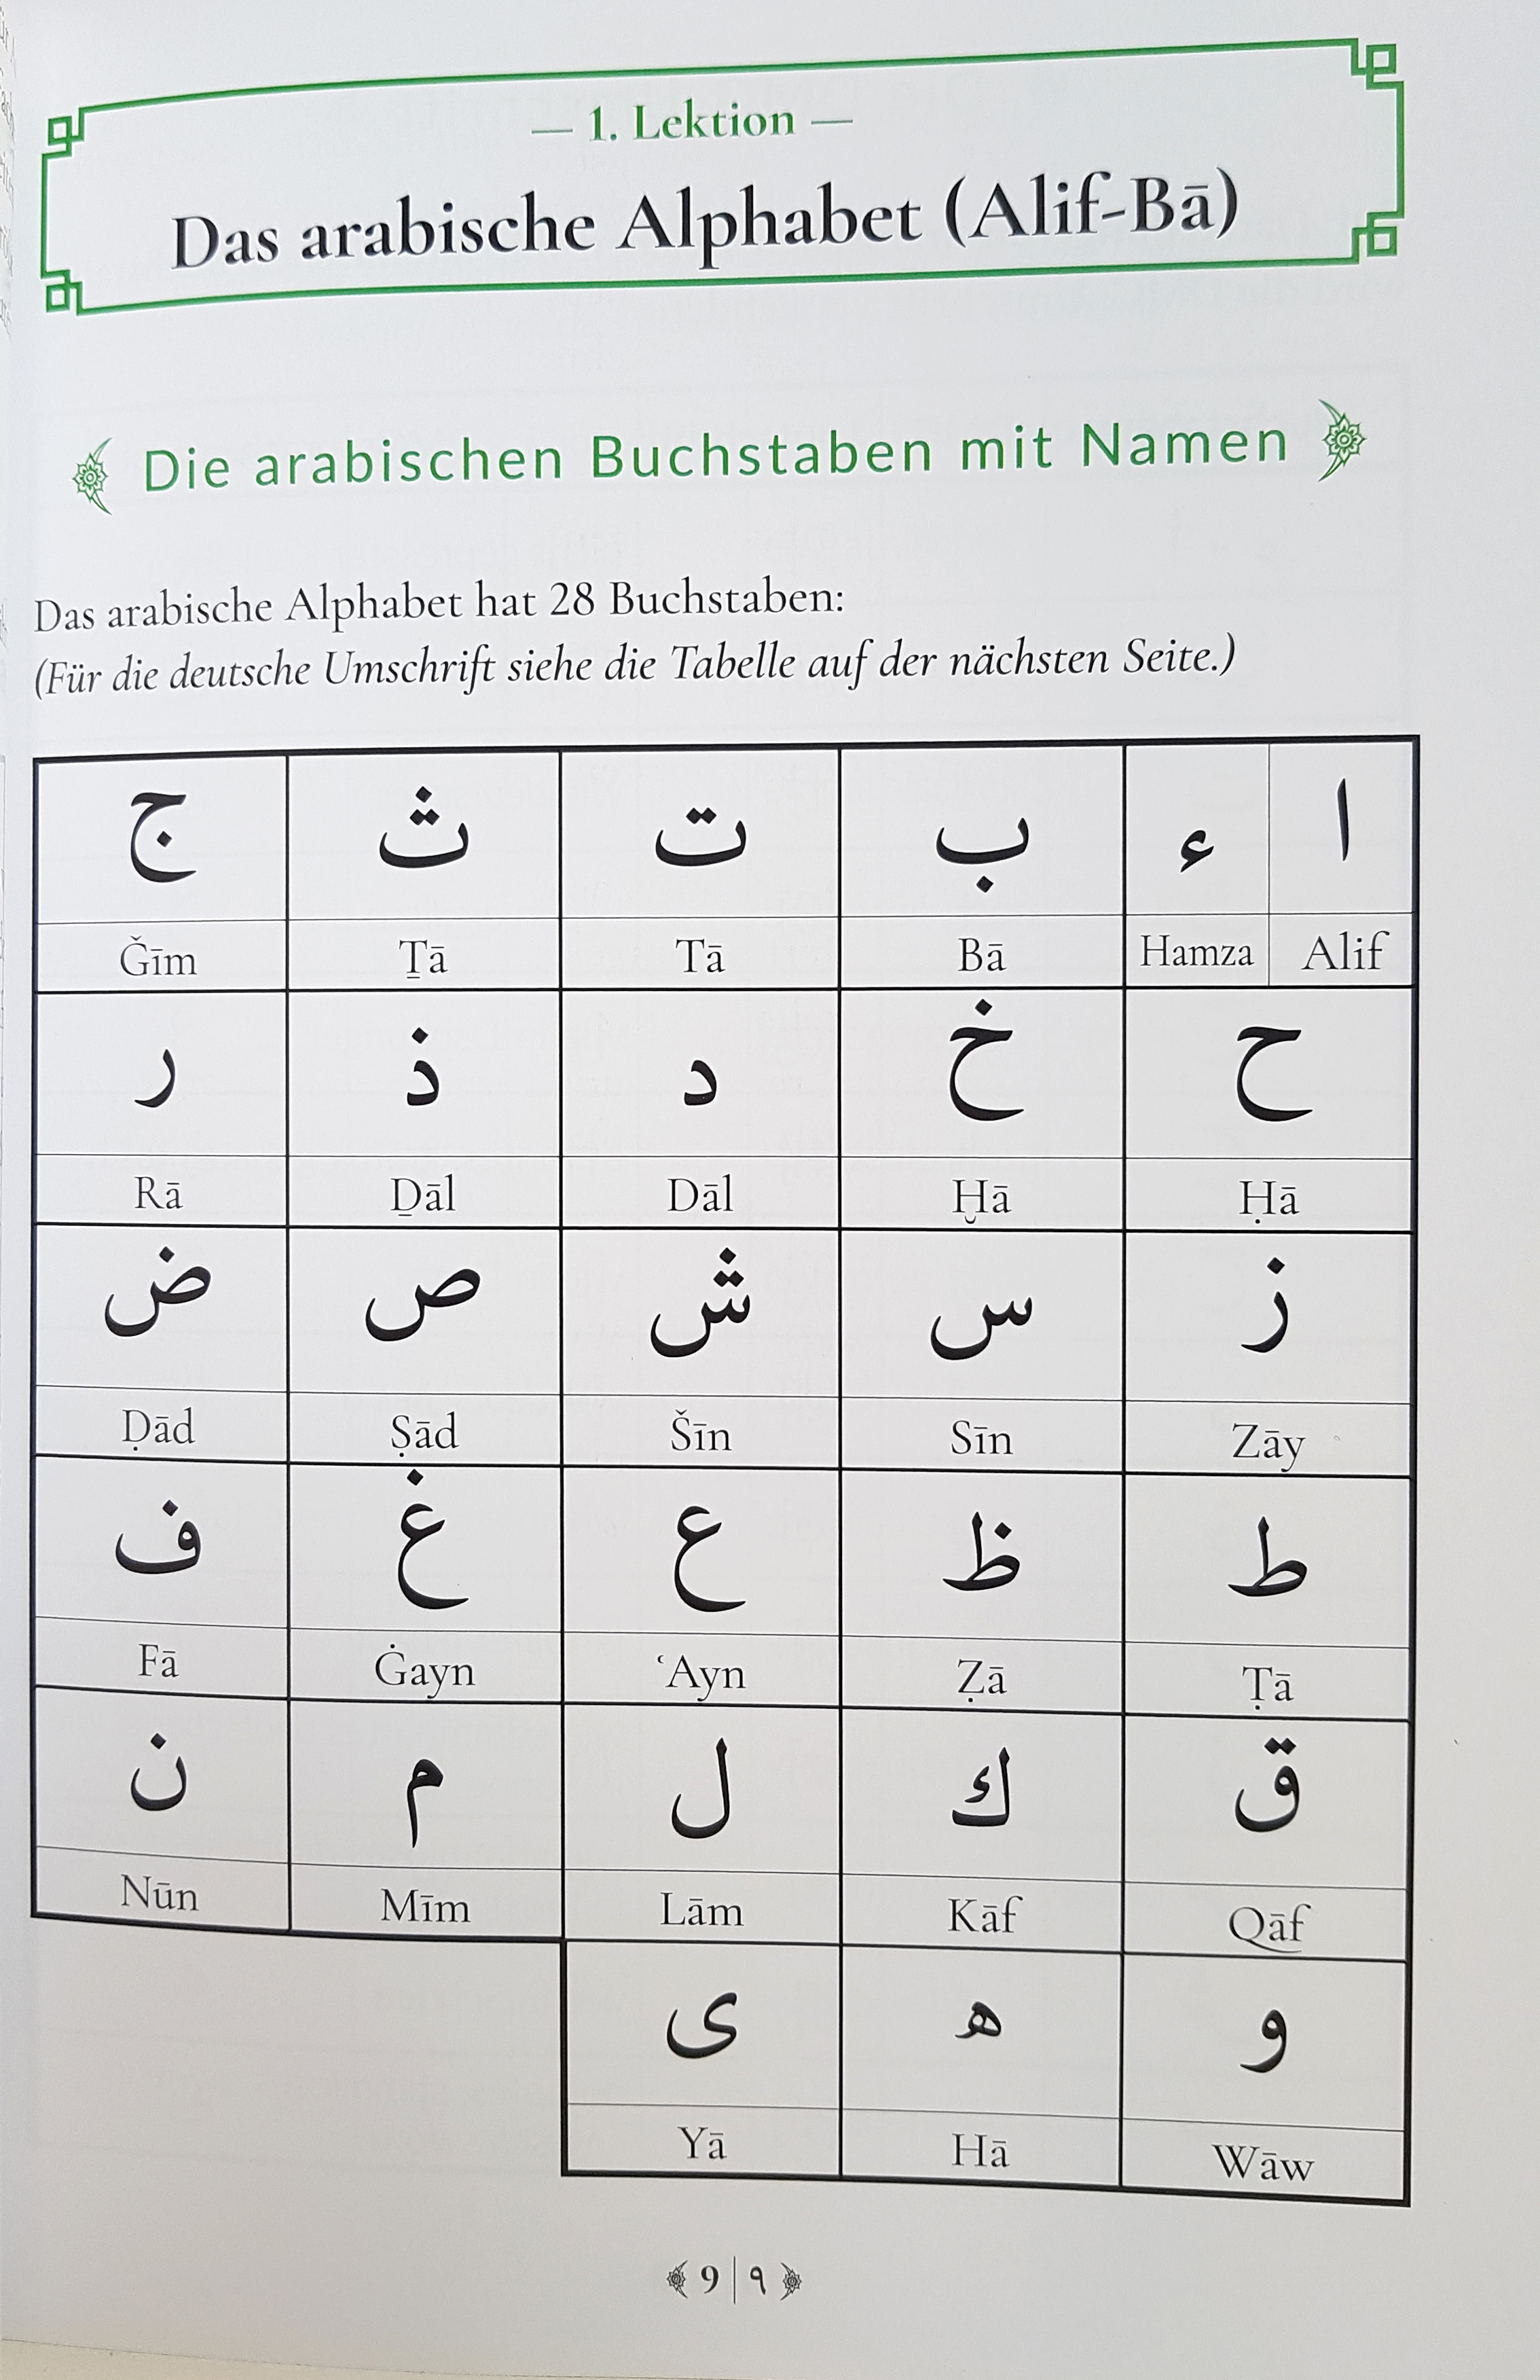 Arabisches Alphabet Mit Lautschrift - Photos Alphabet Collections